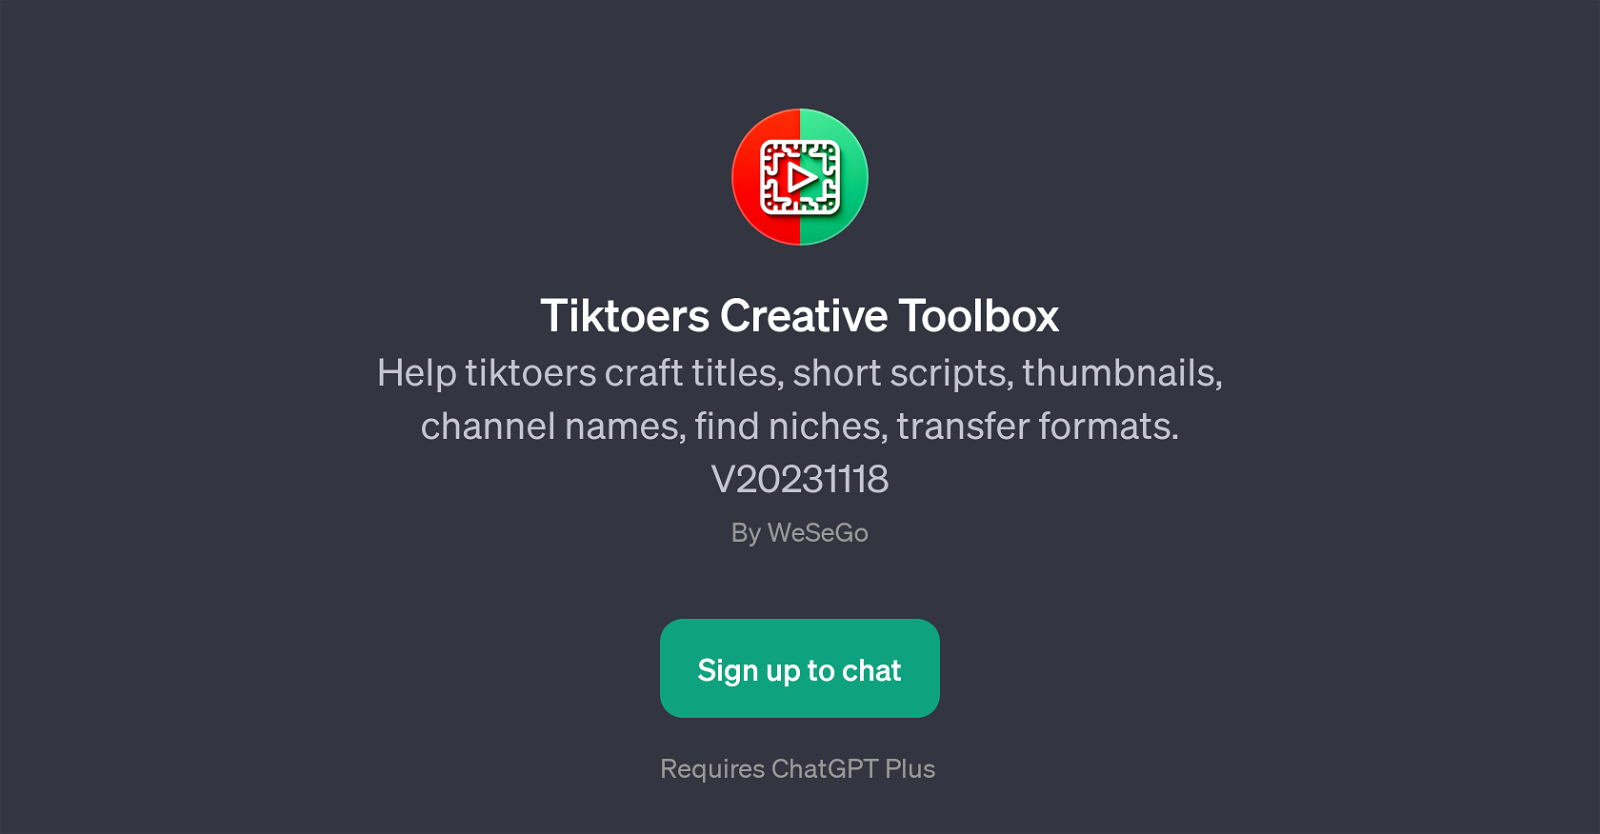 Tiktoers Creative Toolbox website